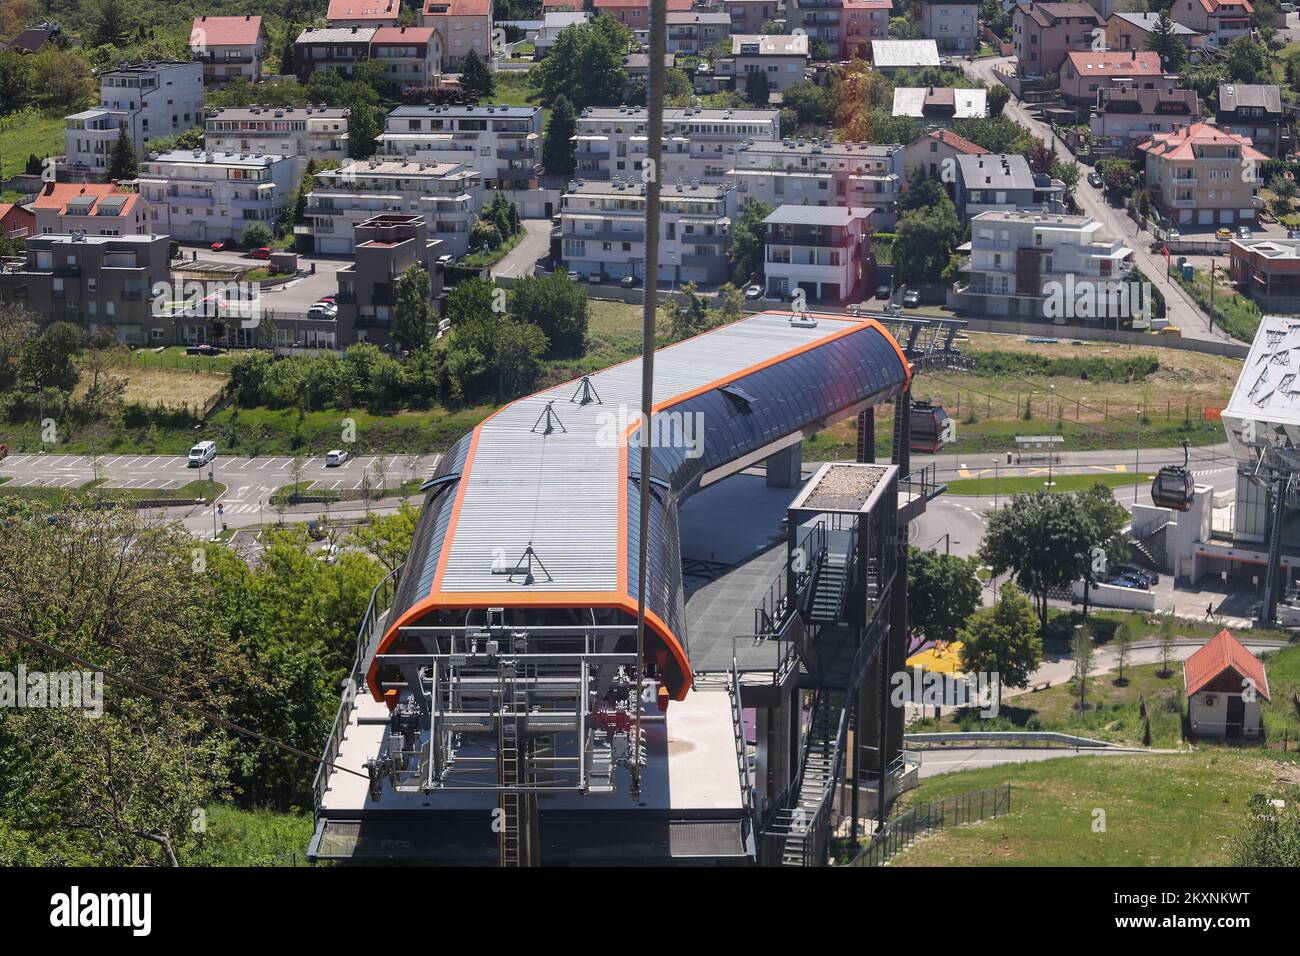 La nueva estación del teleférico está representada en Zagreb, Croacia, el 26 de mayo de 2021. La inversión total en el nuevo teleférico es de 100 millones de euros. En una hora podrá transportar 1.500 pasajeros, con un viaje de 16 minutos a una velocidad de 20 km/h. Foto: Luka Stanzl/PIXSELL Foto de stock